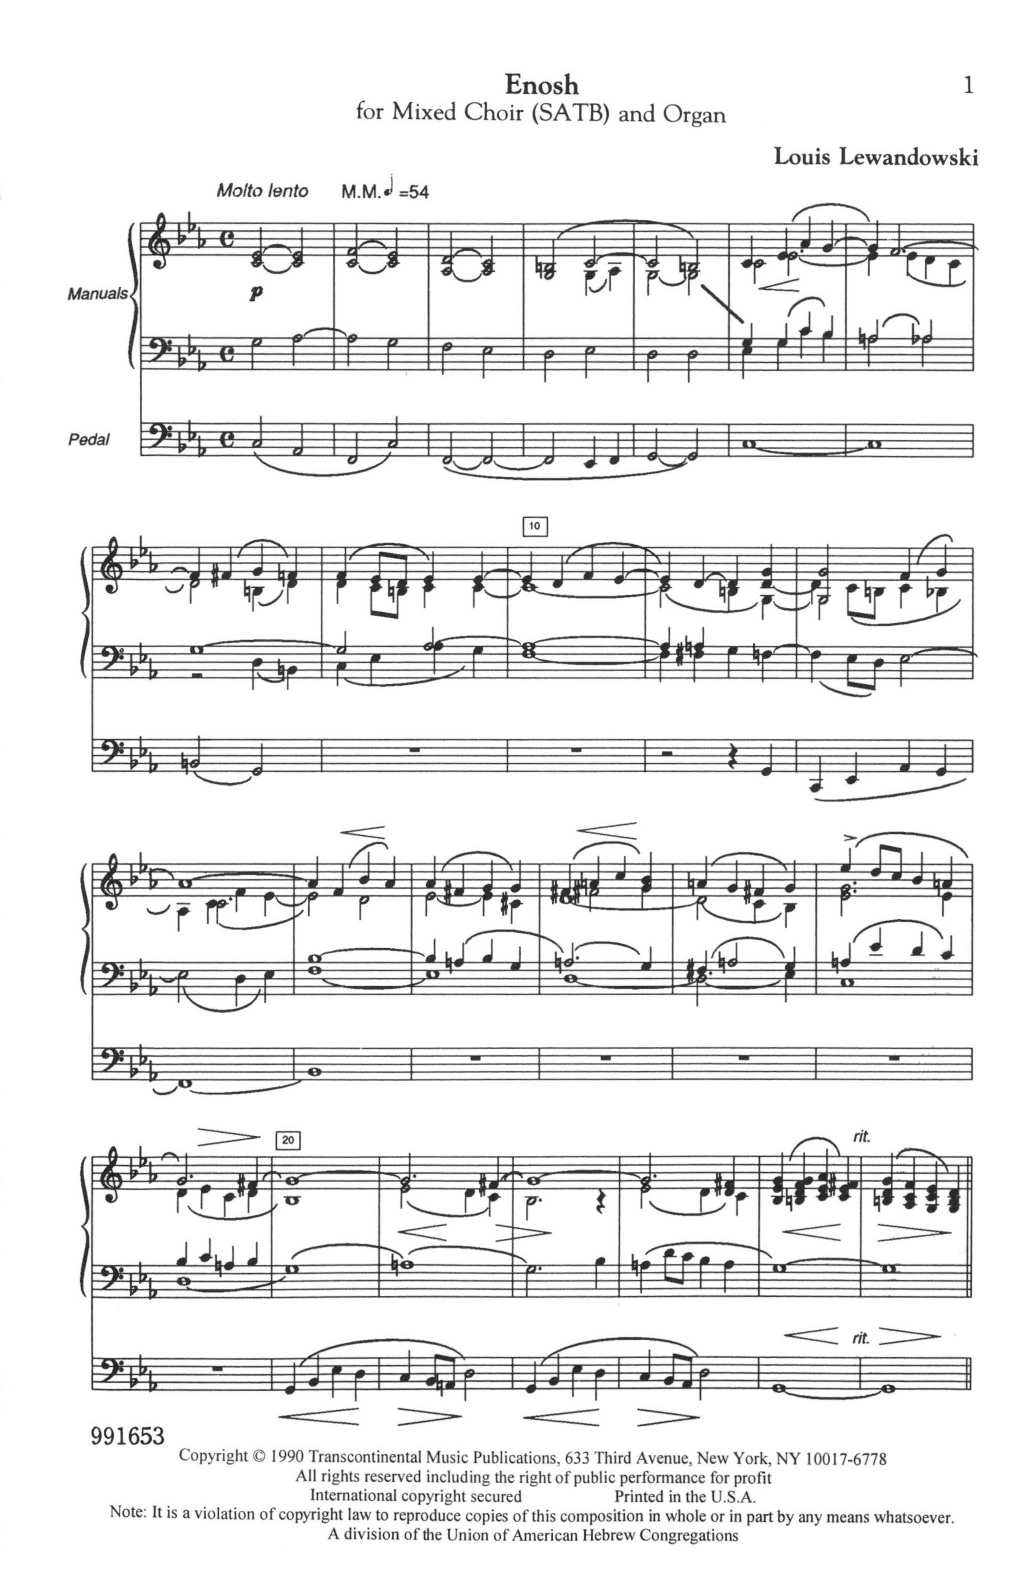 Download Louis Lewandowski Enosh Sheet Music and learn how to play SATB Choir PDF digital score in minutes